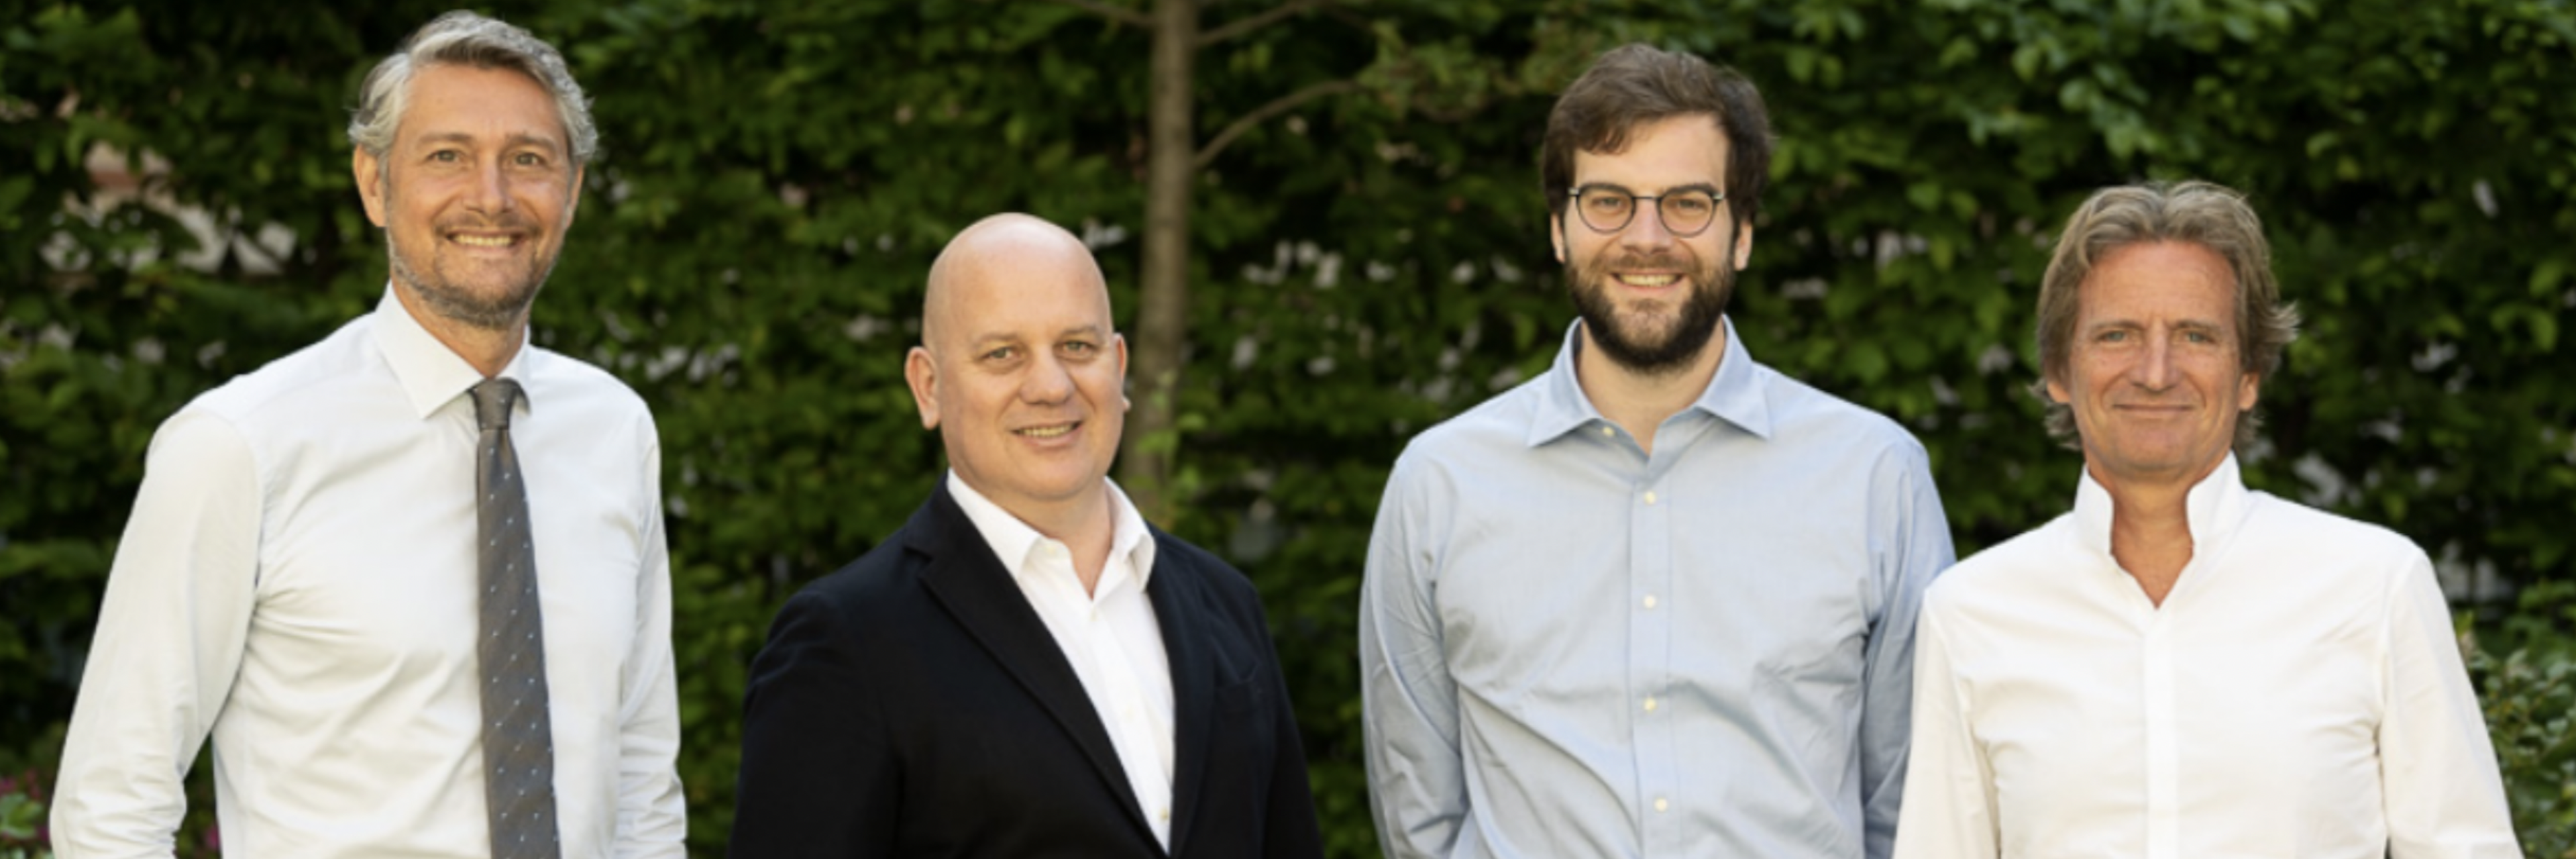 The investment team at Quontonation, the Paris-based quantum-focused VC